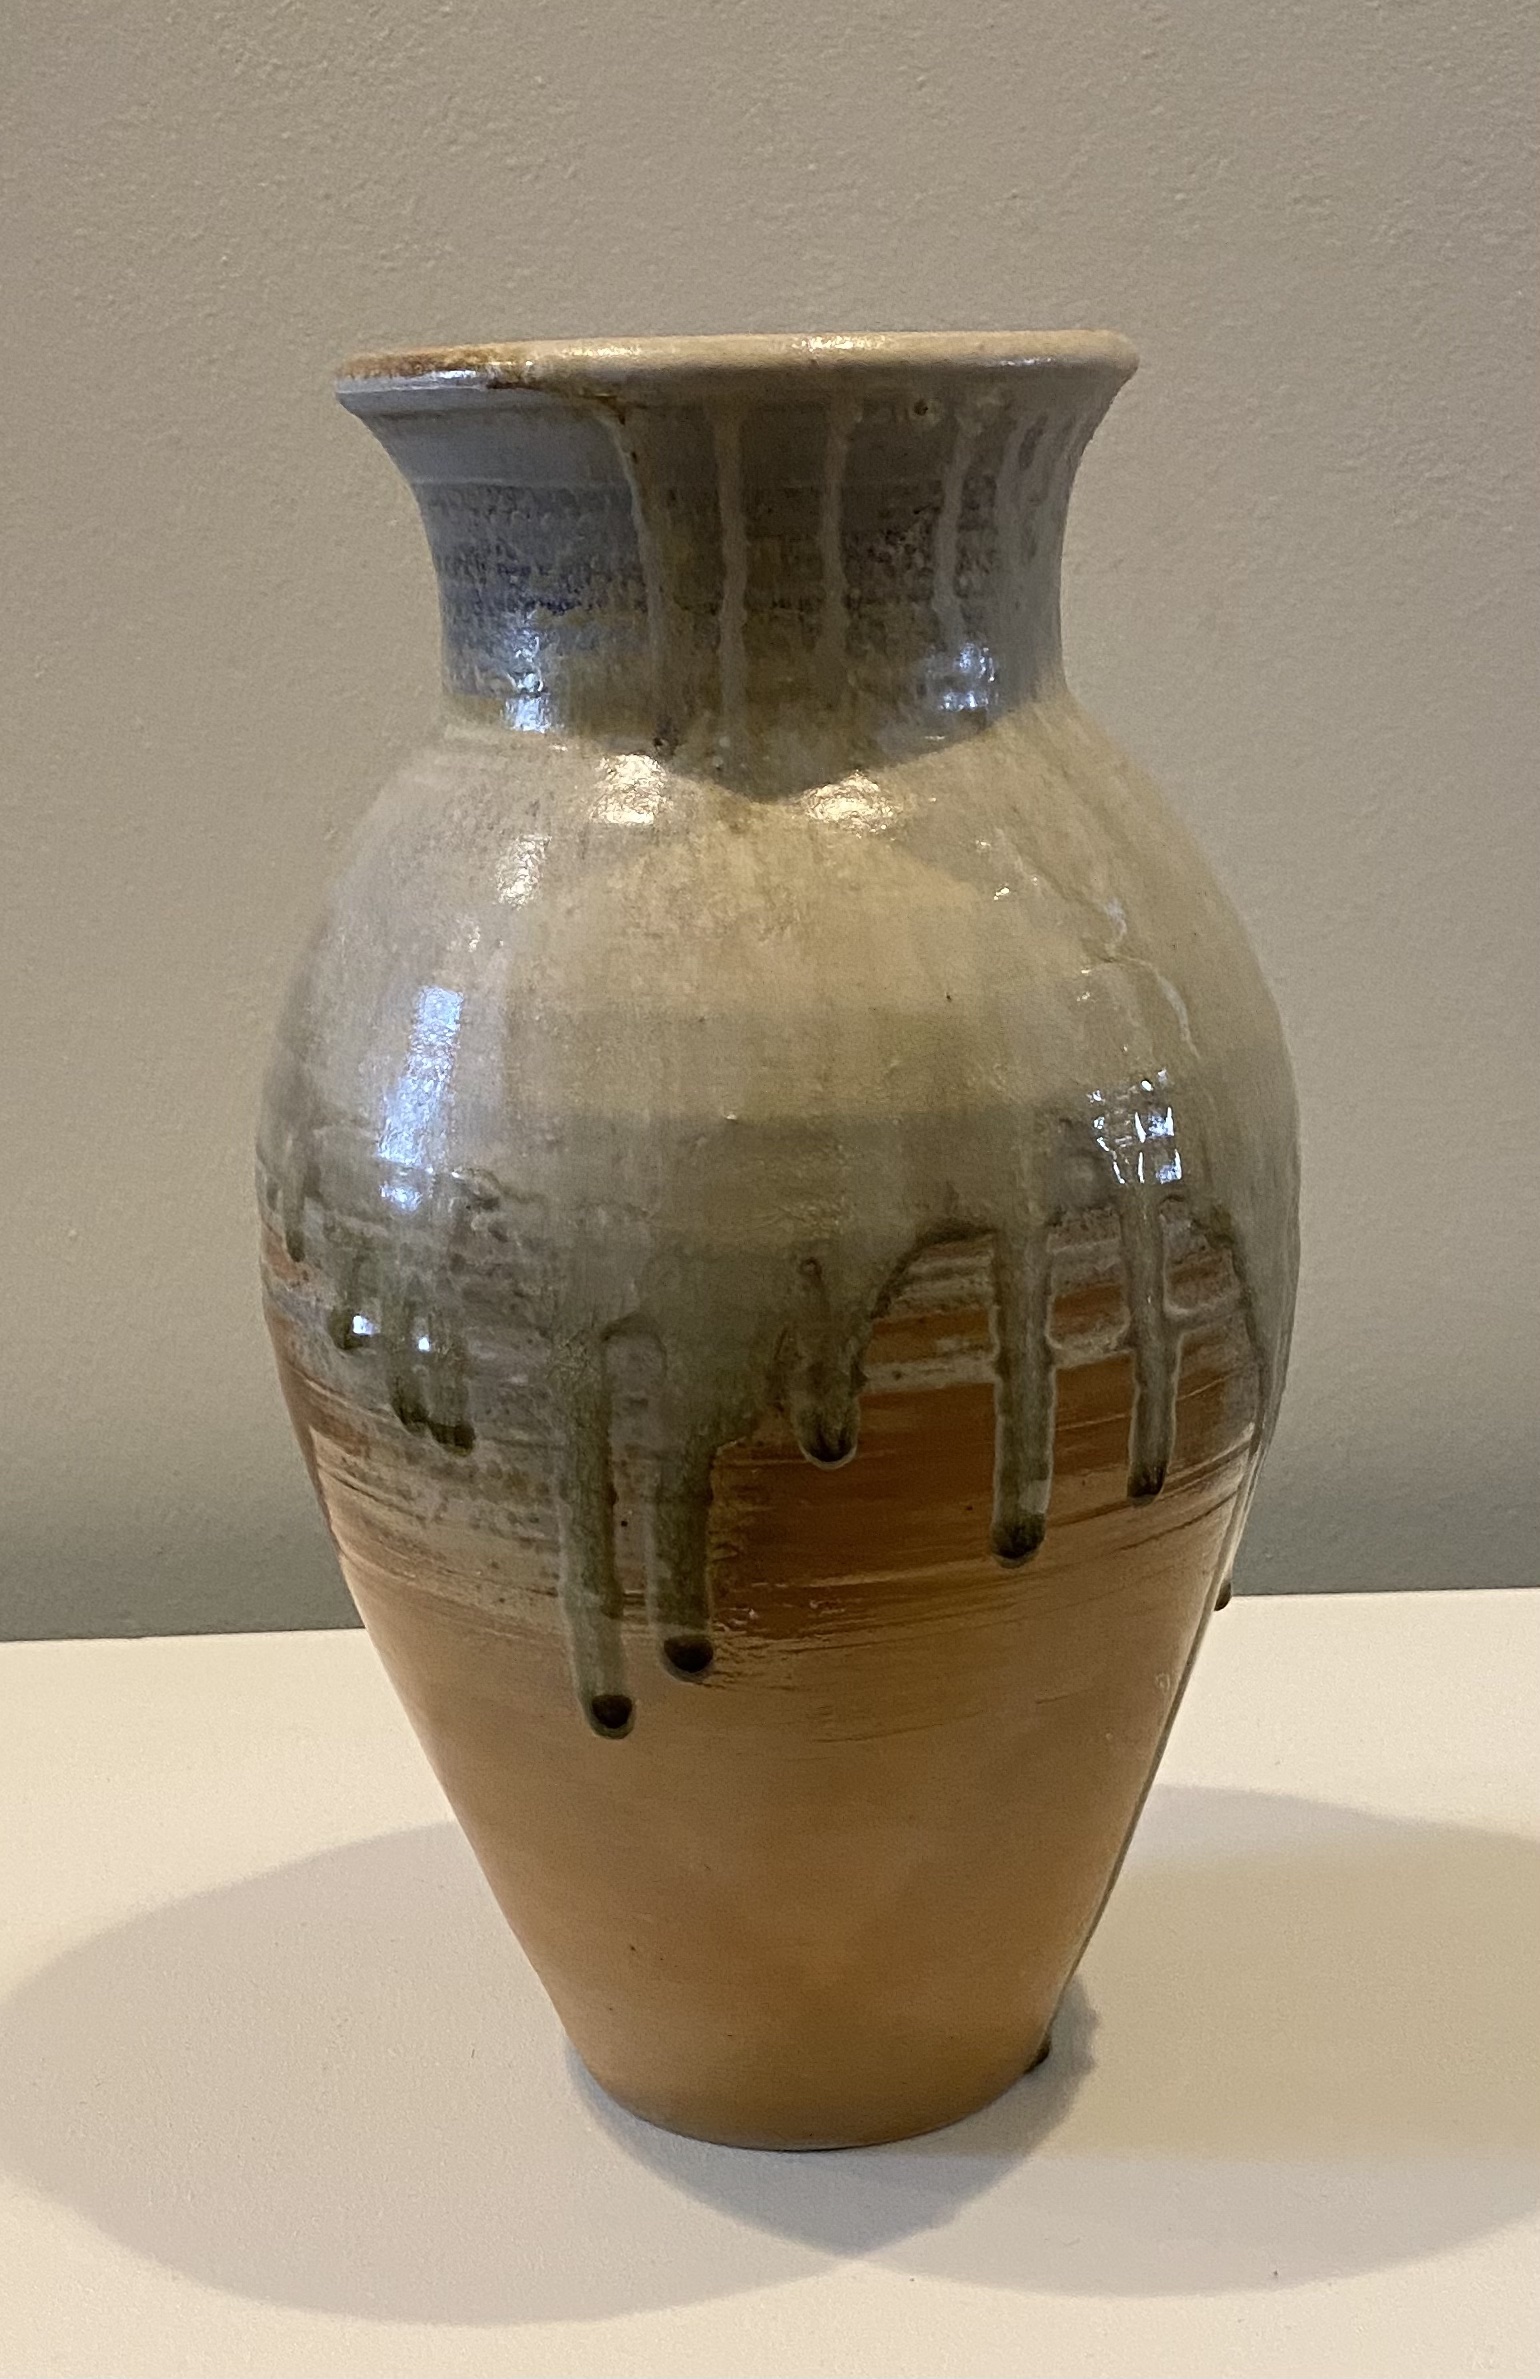 Vase
wood-fired stoneware
14.5"
$160.